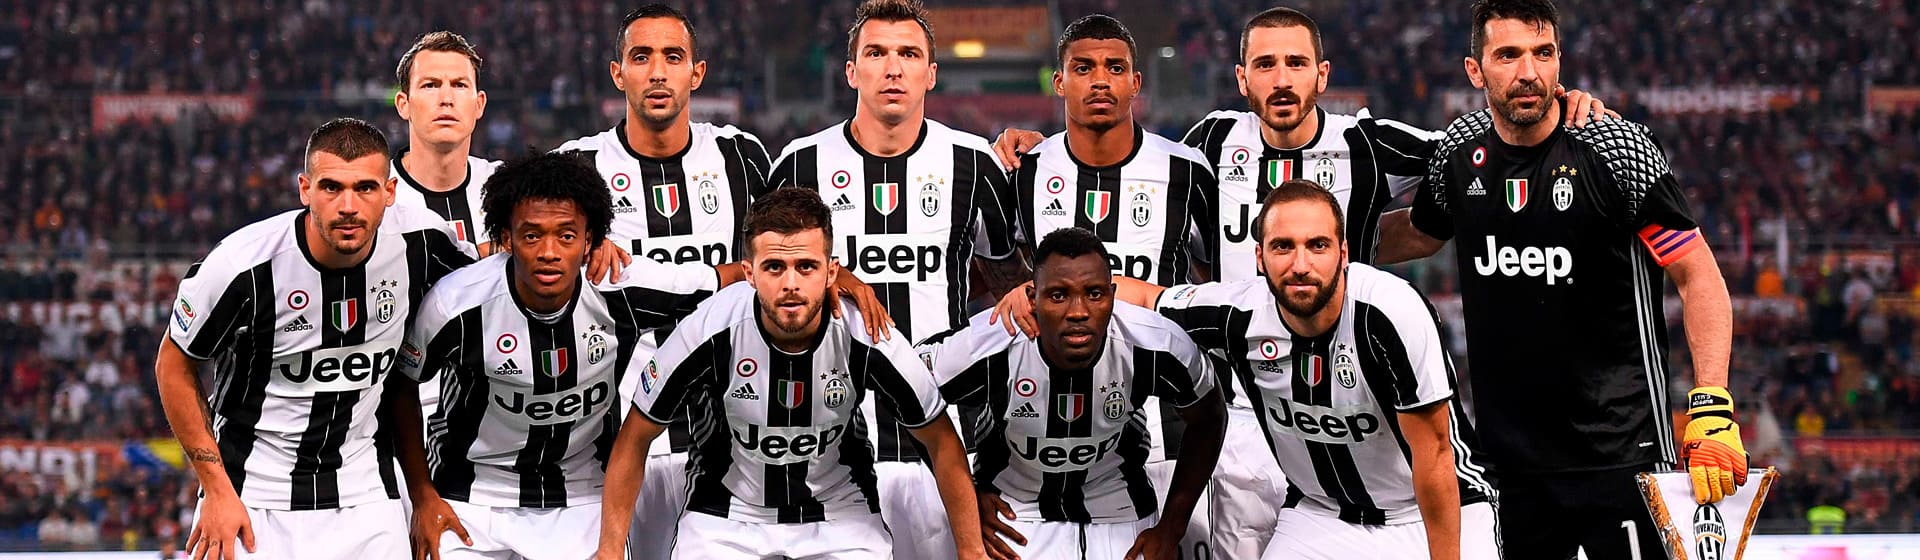 FC Juventus - Мерч и одежда с атрибутикой